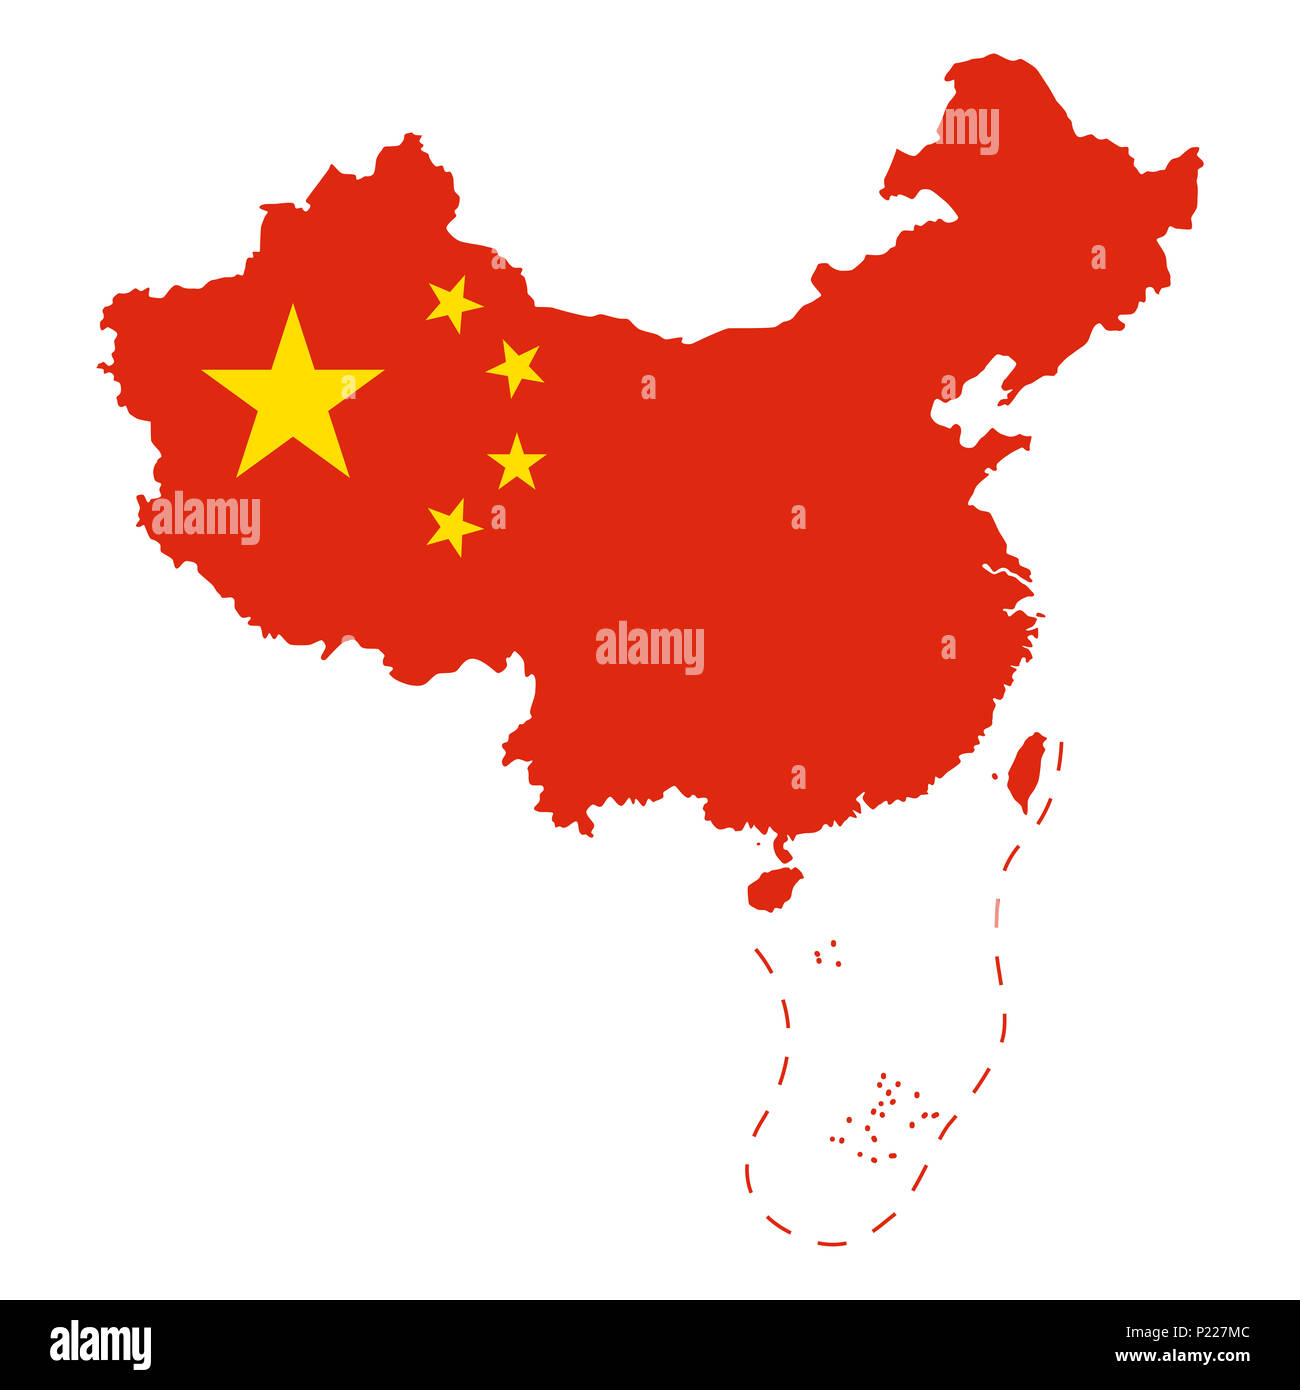 Flagge von China im Land. An, der von der Volksrepublik China, VR China kontrolliert, und behauptete, aber unkontrollierte Regionen. 5-Sterne Red Flag. Stockfoto